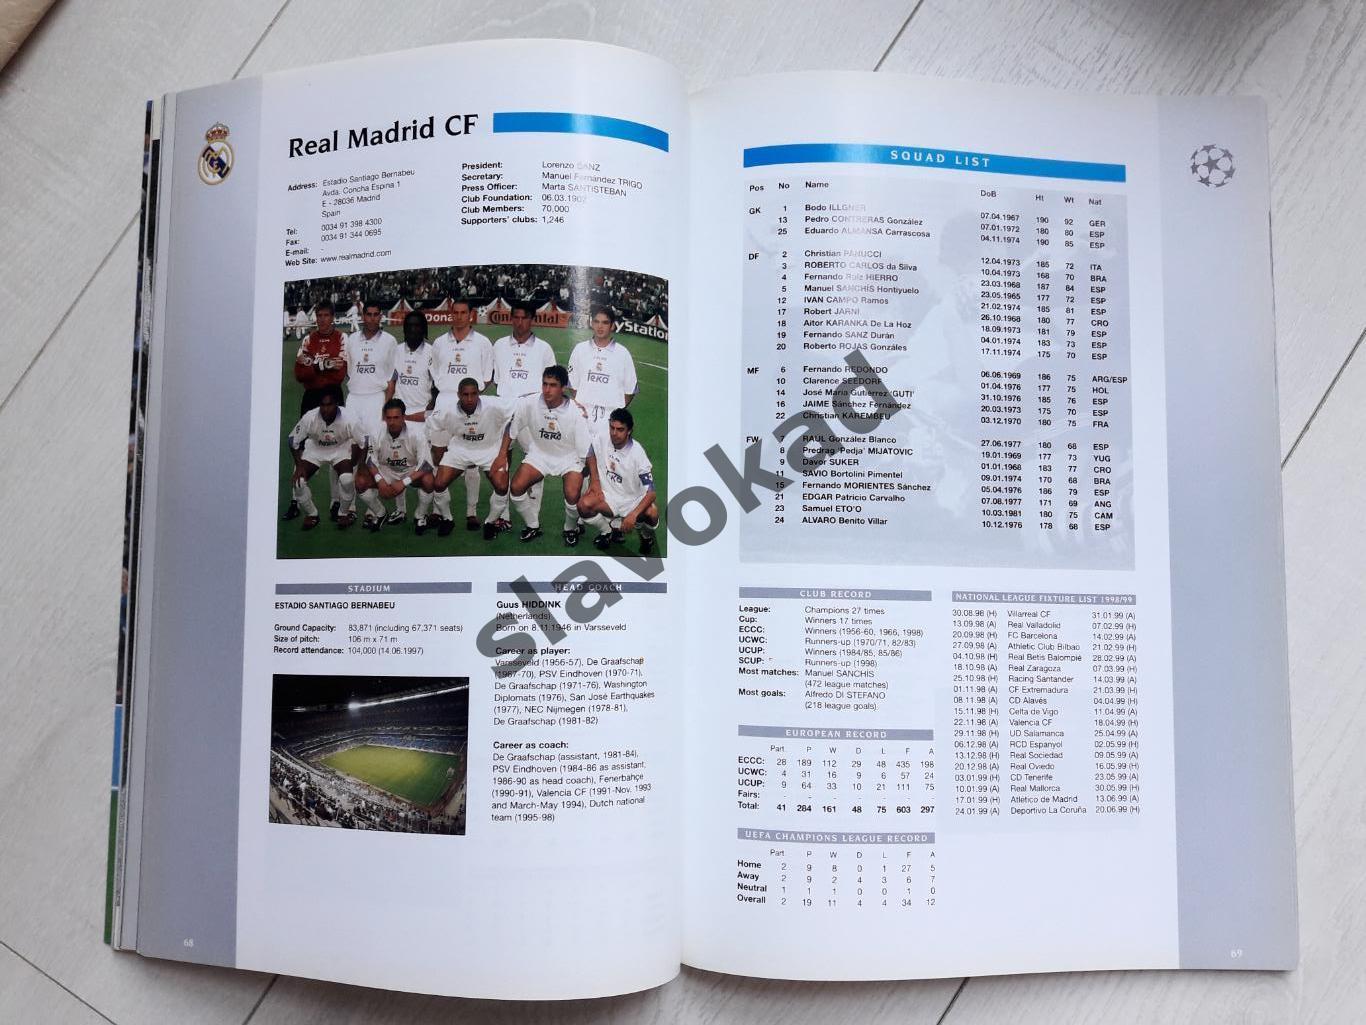 Спартак - Реал Интер Штурм 1998 - официальная программа УЕФА на групповой этап 6